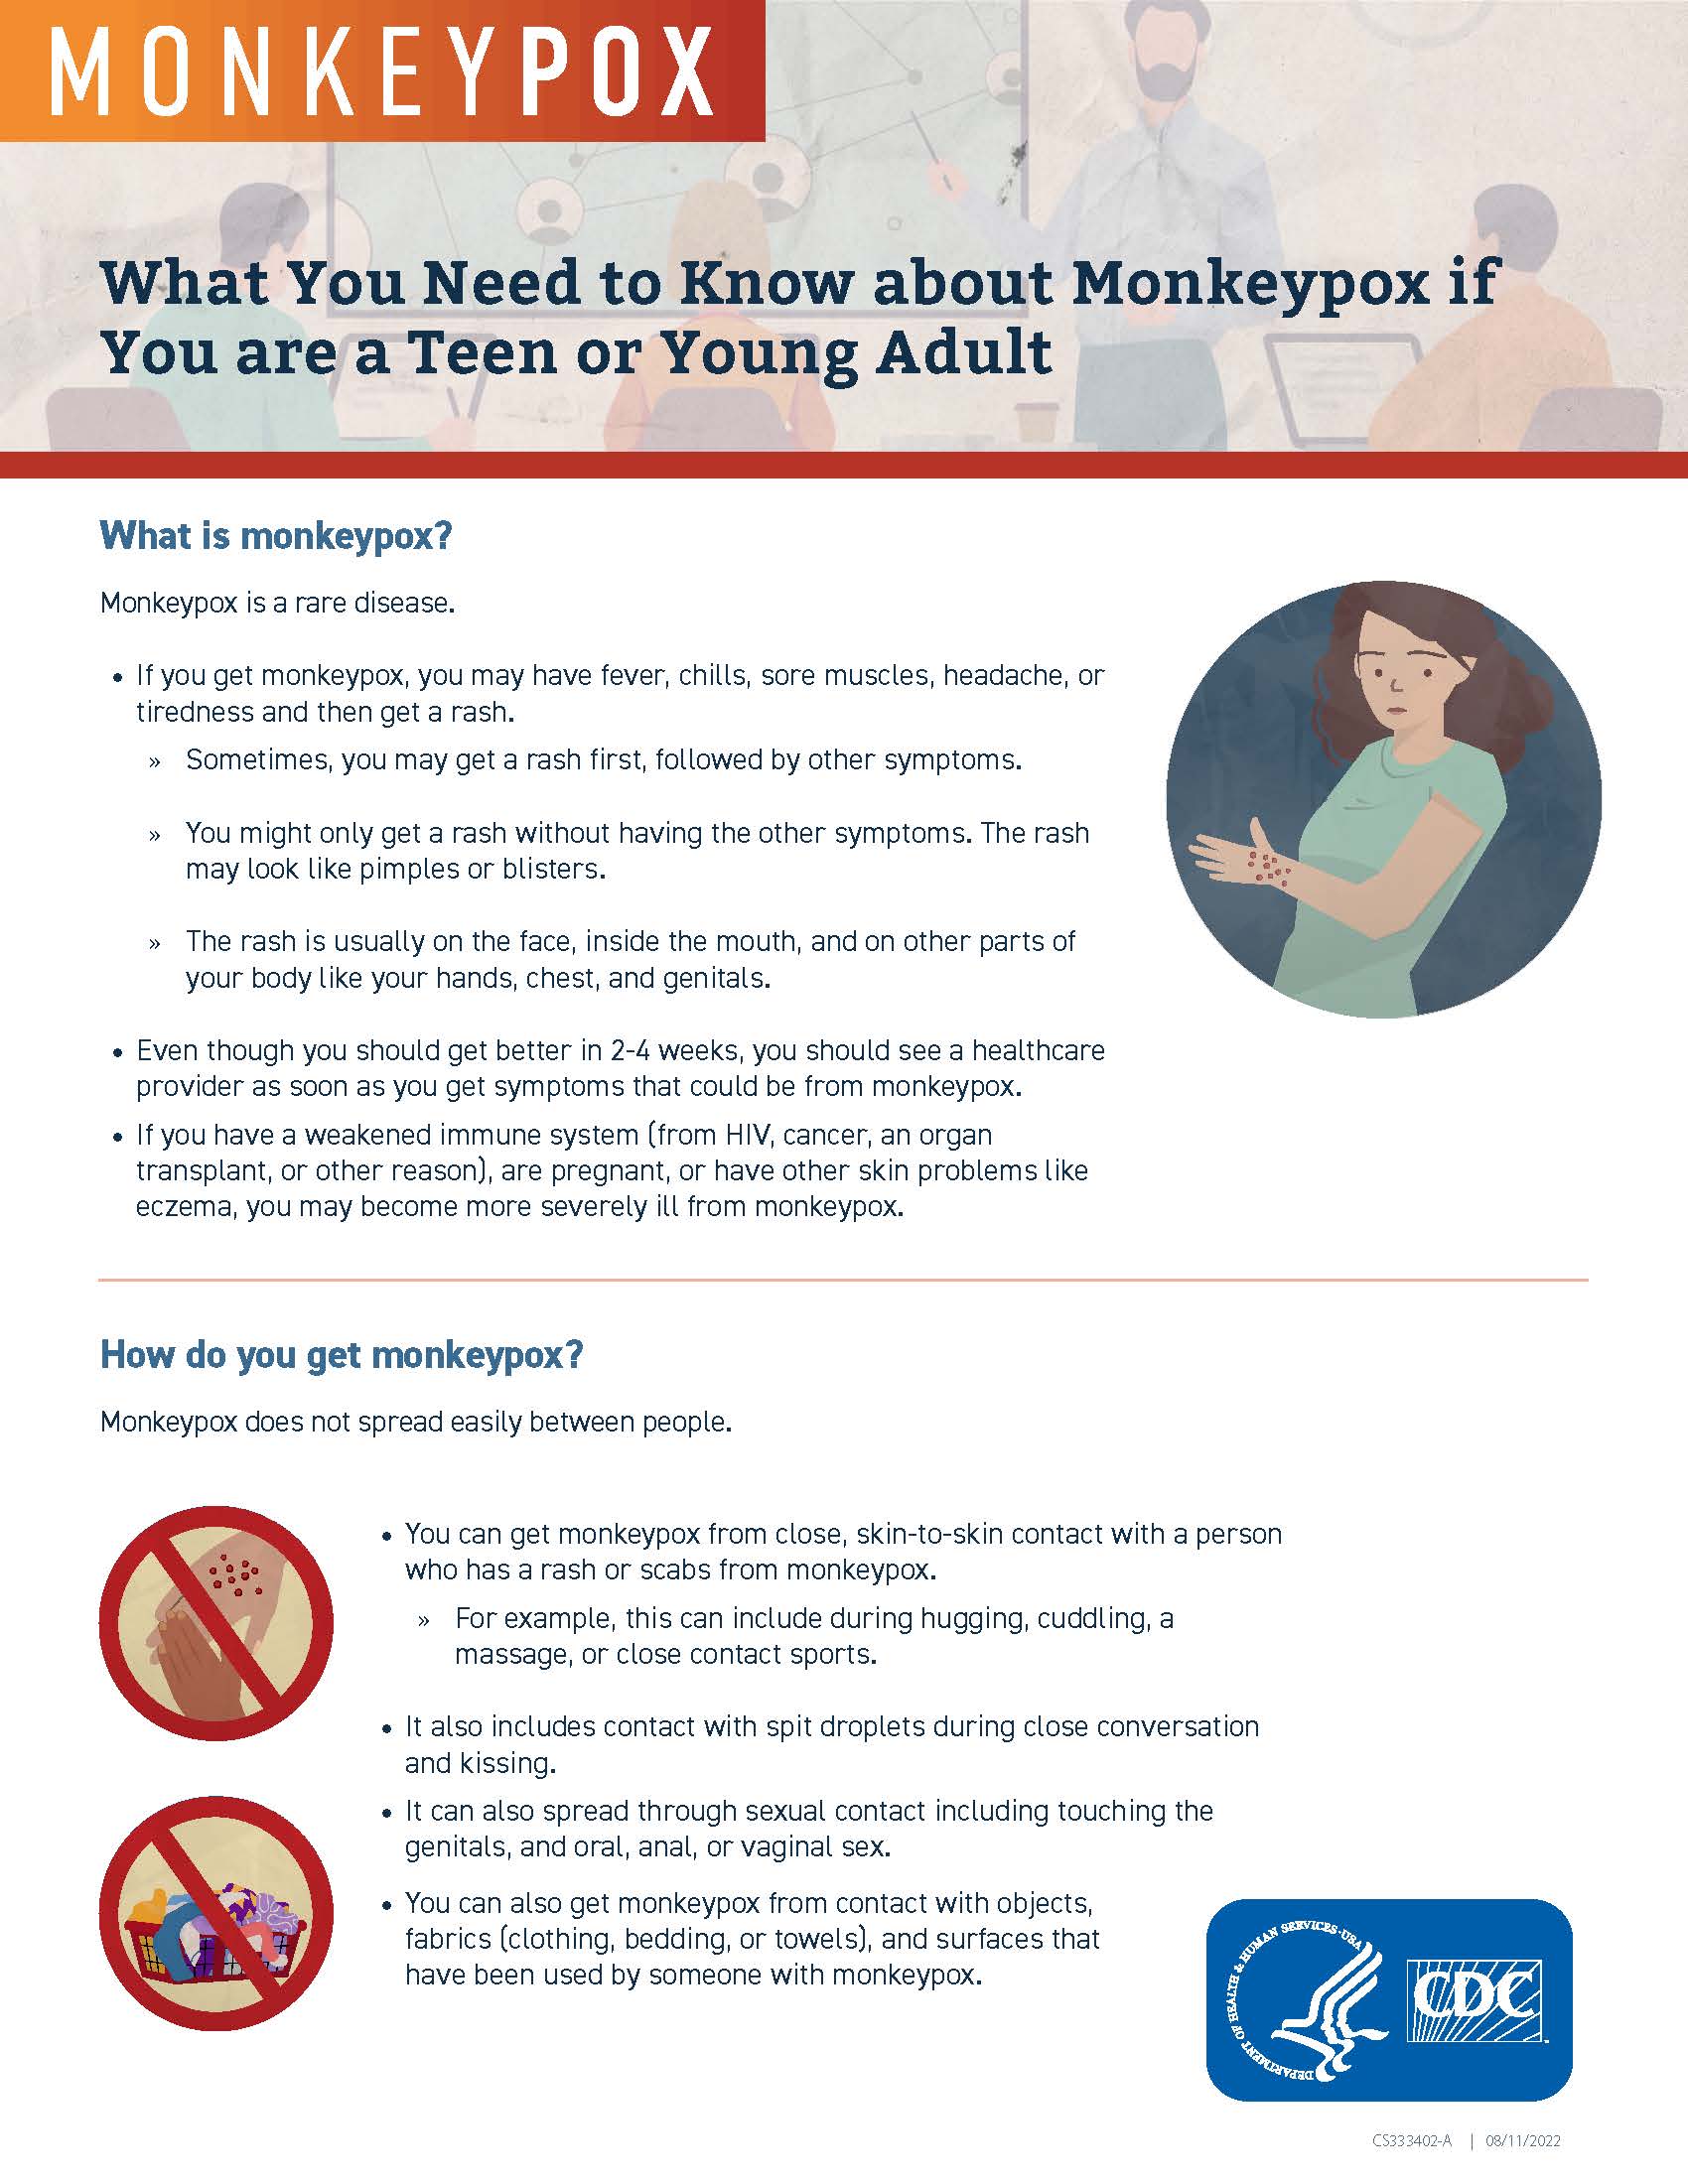 Monkey Pox info